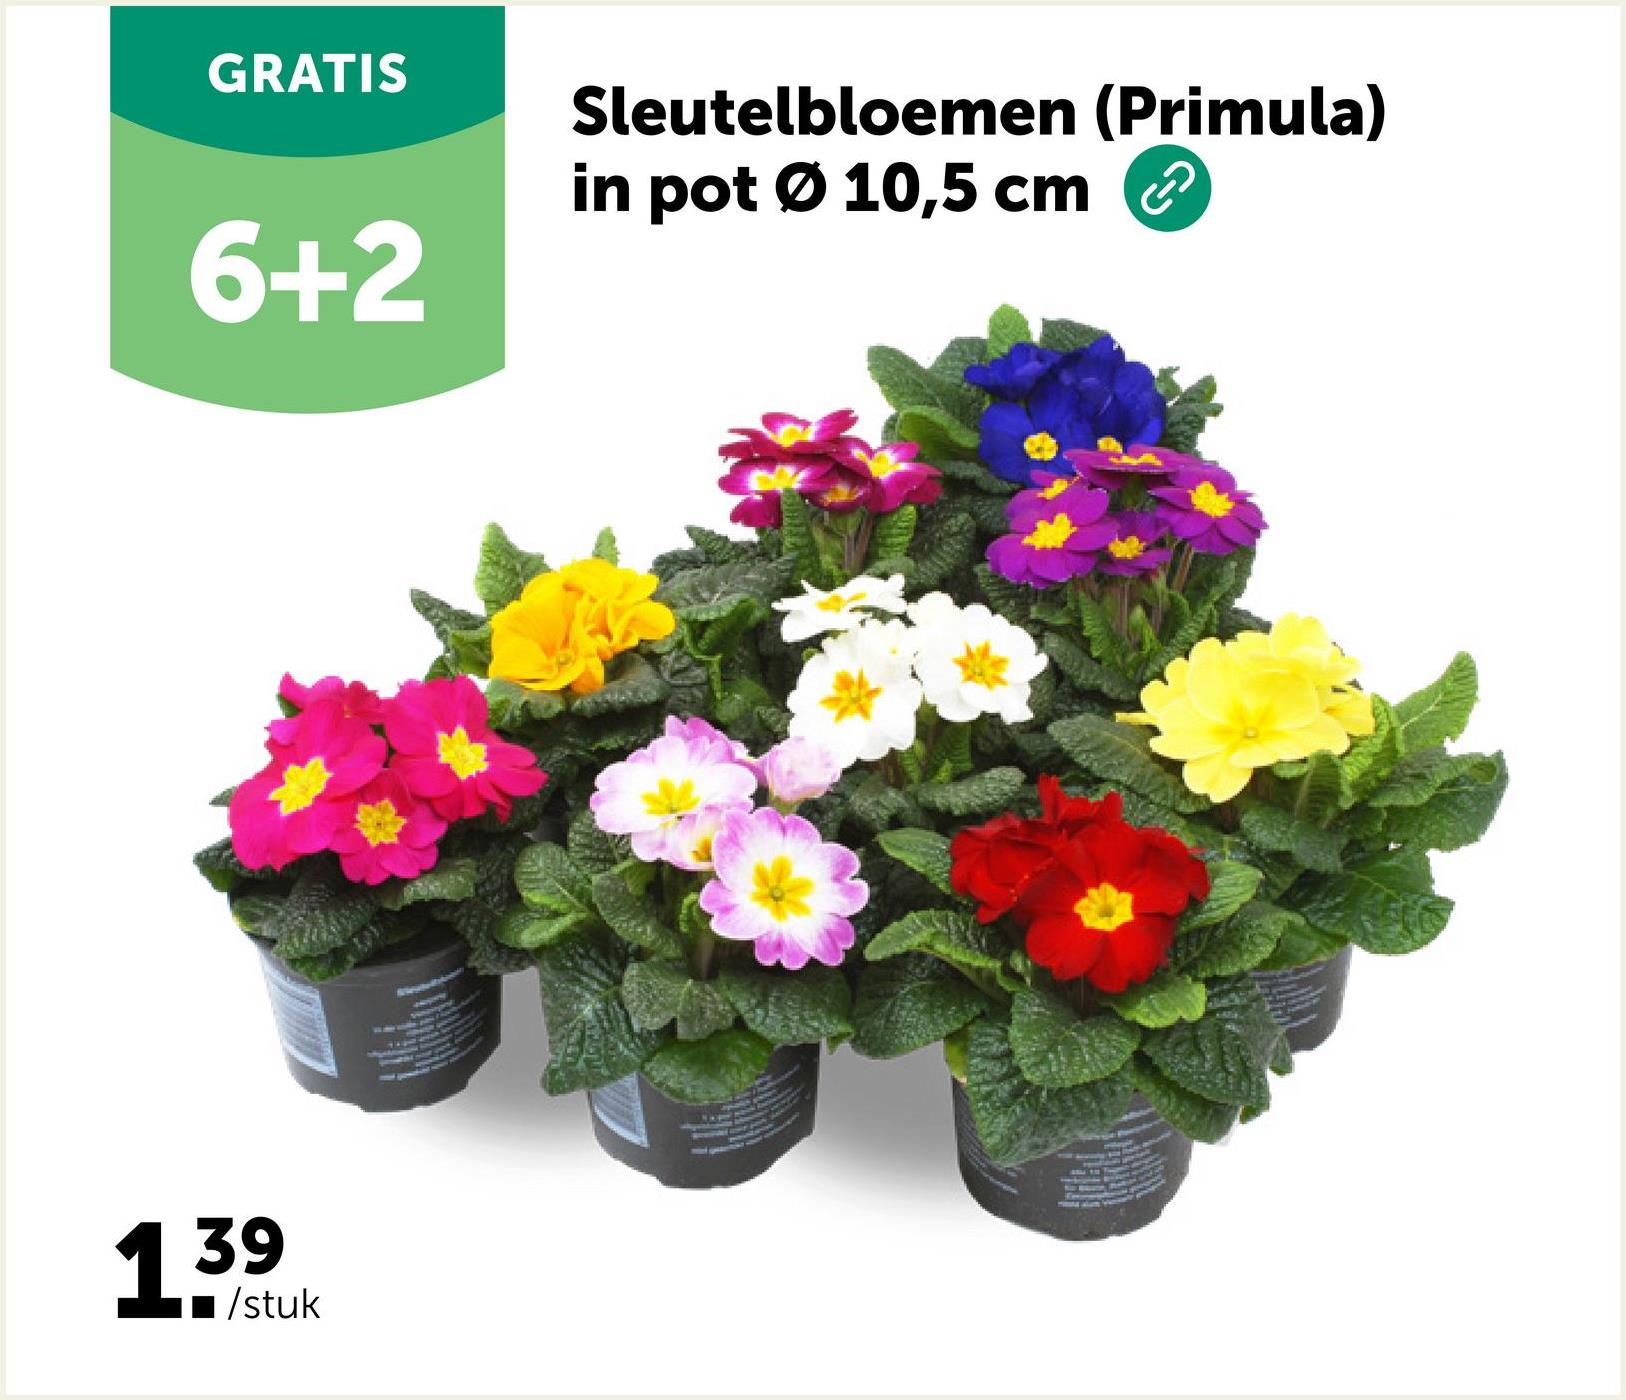 GRATIS
6+2
139
/stuk
V p
4
Sleutelbloemen (Primula)
in pot Ø 10,5 cm
quale P
Wywatno
put P
met gearrtcht
S